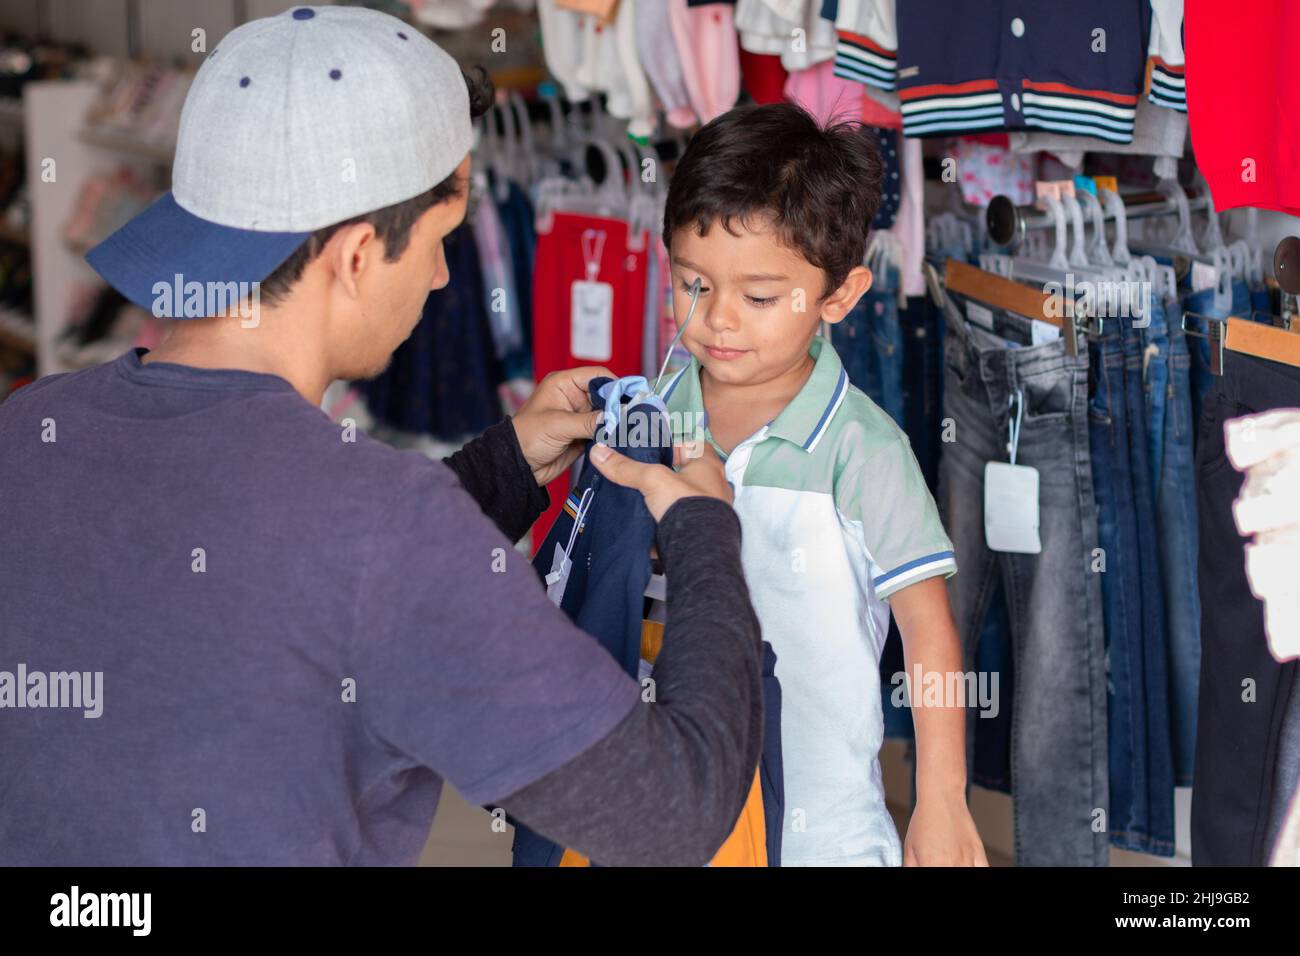 Giovane adulto che acquista abiti per suo figlio, uomo latino che taglia una camicia o un maglione per suo figlio in un negozio di abbigliamento. Foto Stock